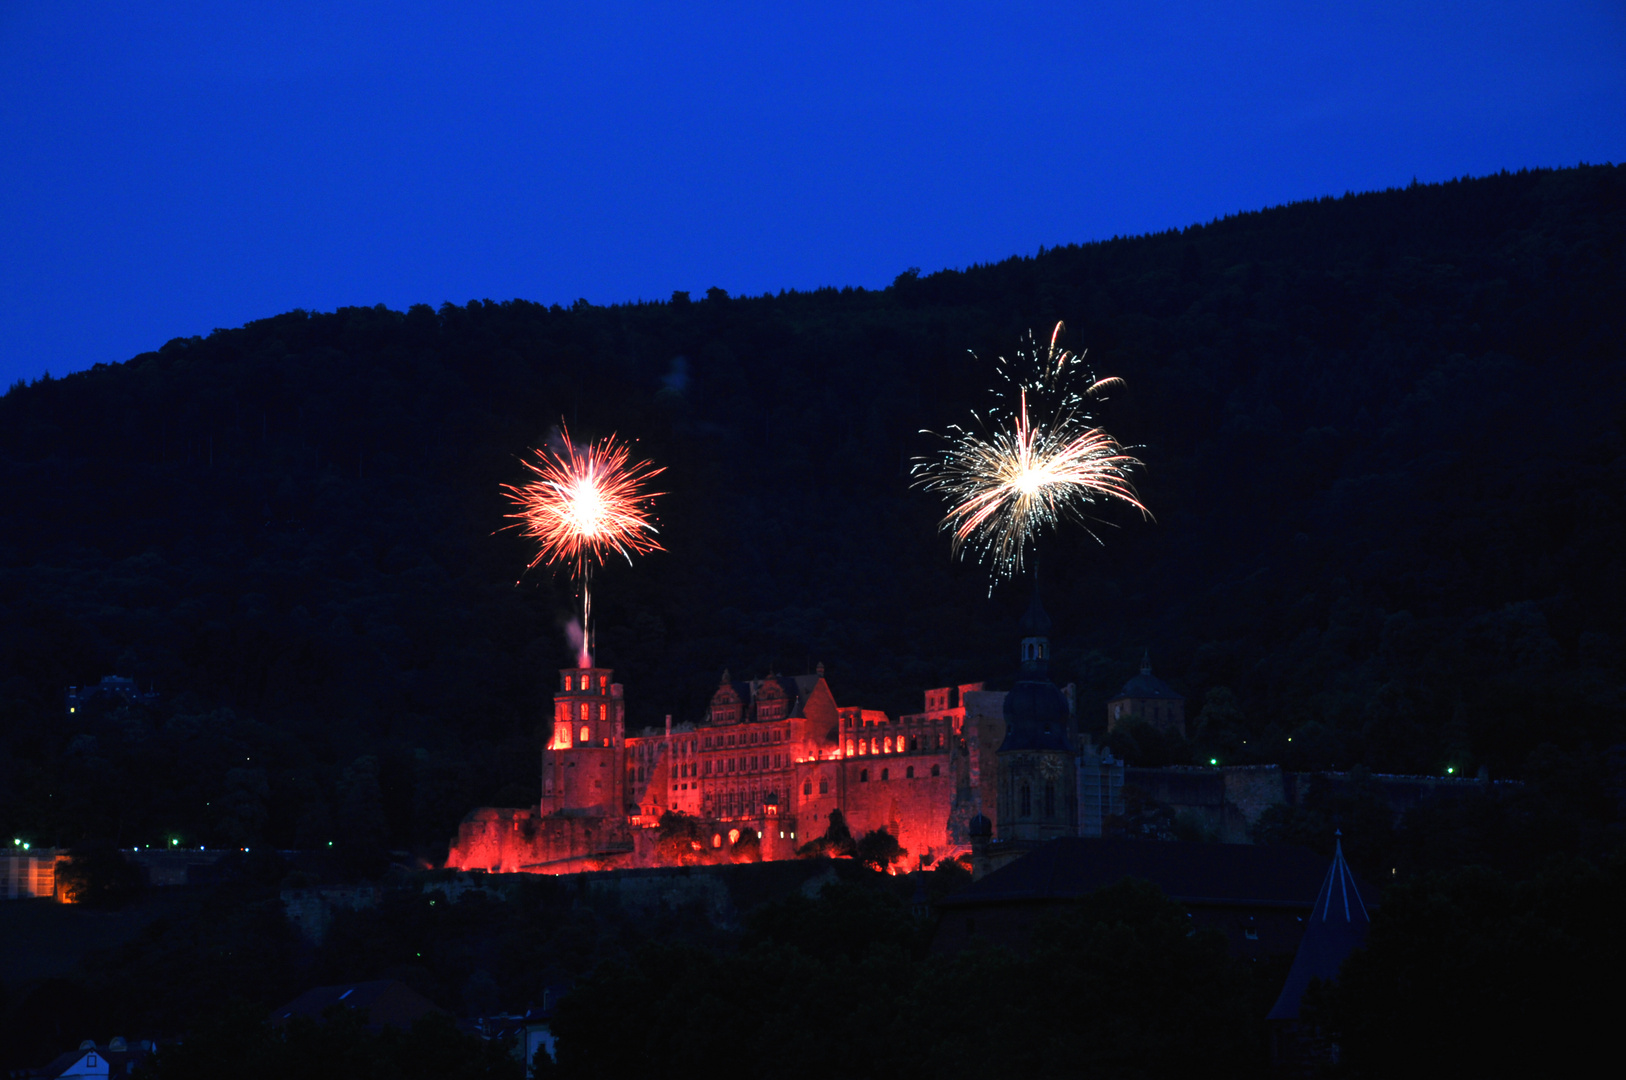 Heidelberg Schlossbeleuchtung 2